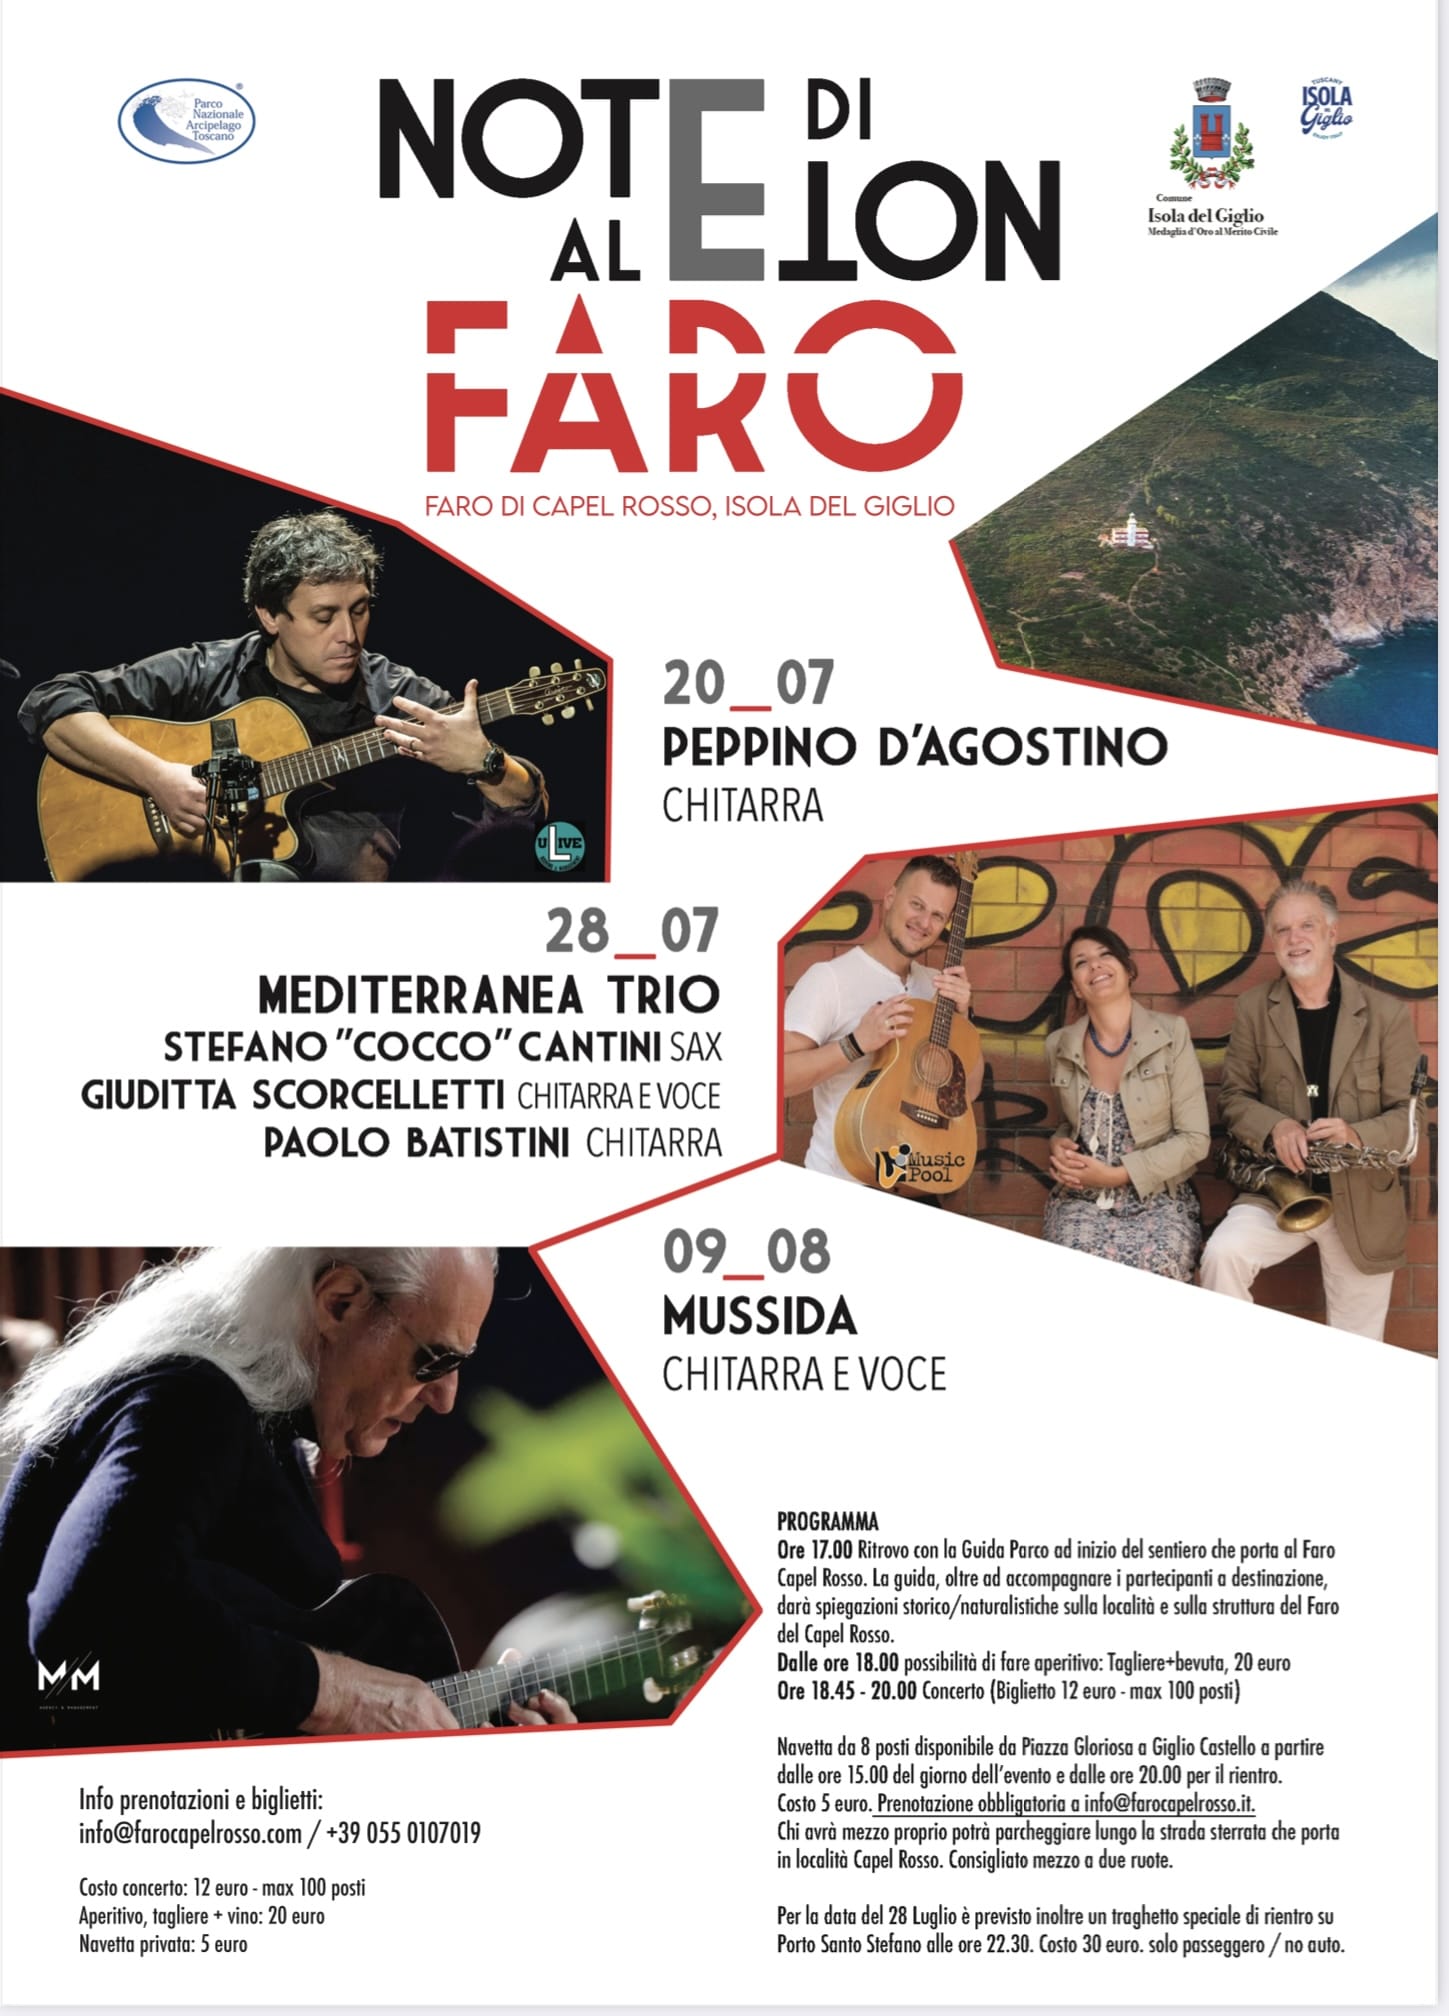 Concerti Estivi al Faro di Capel Rosso all'Isola del Giglio